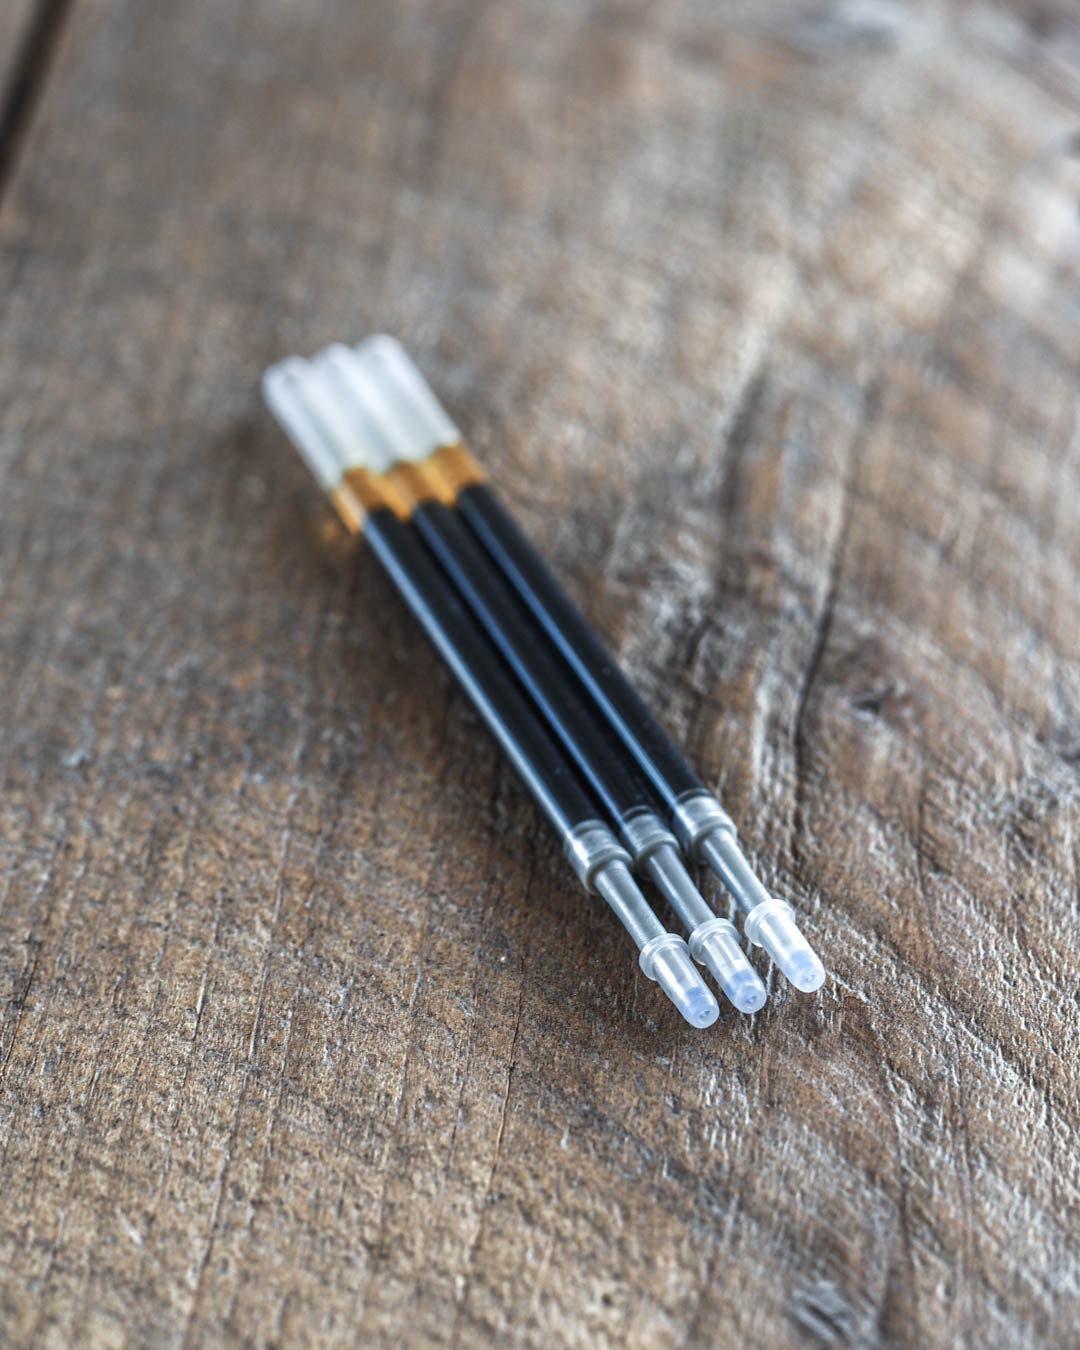 Luava brass ballpoint pen extra ink cartridges 3-pack